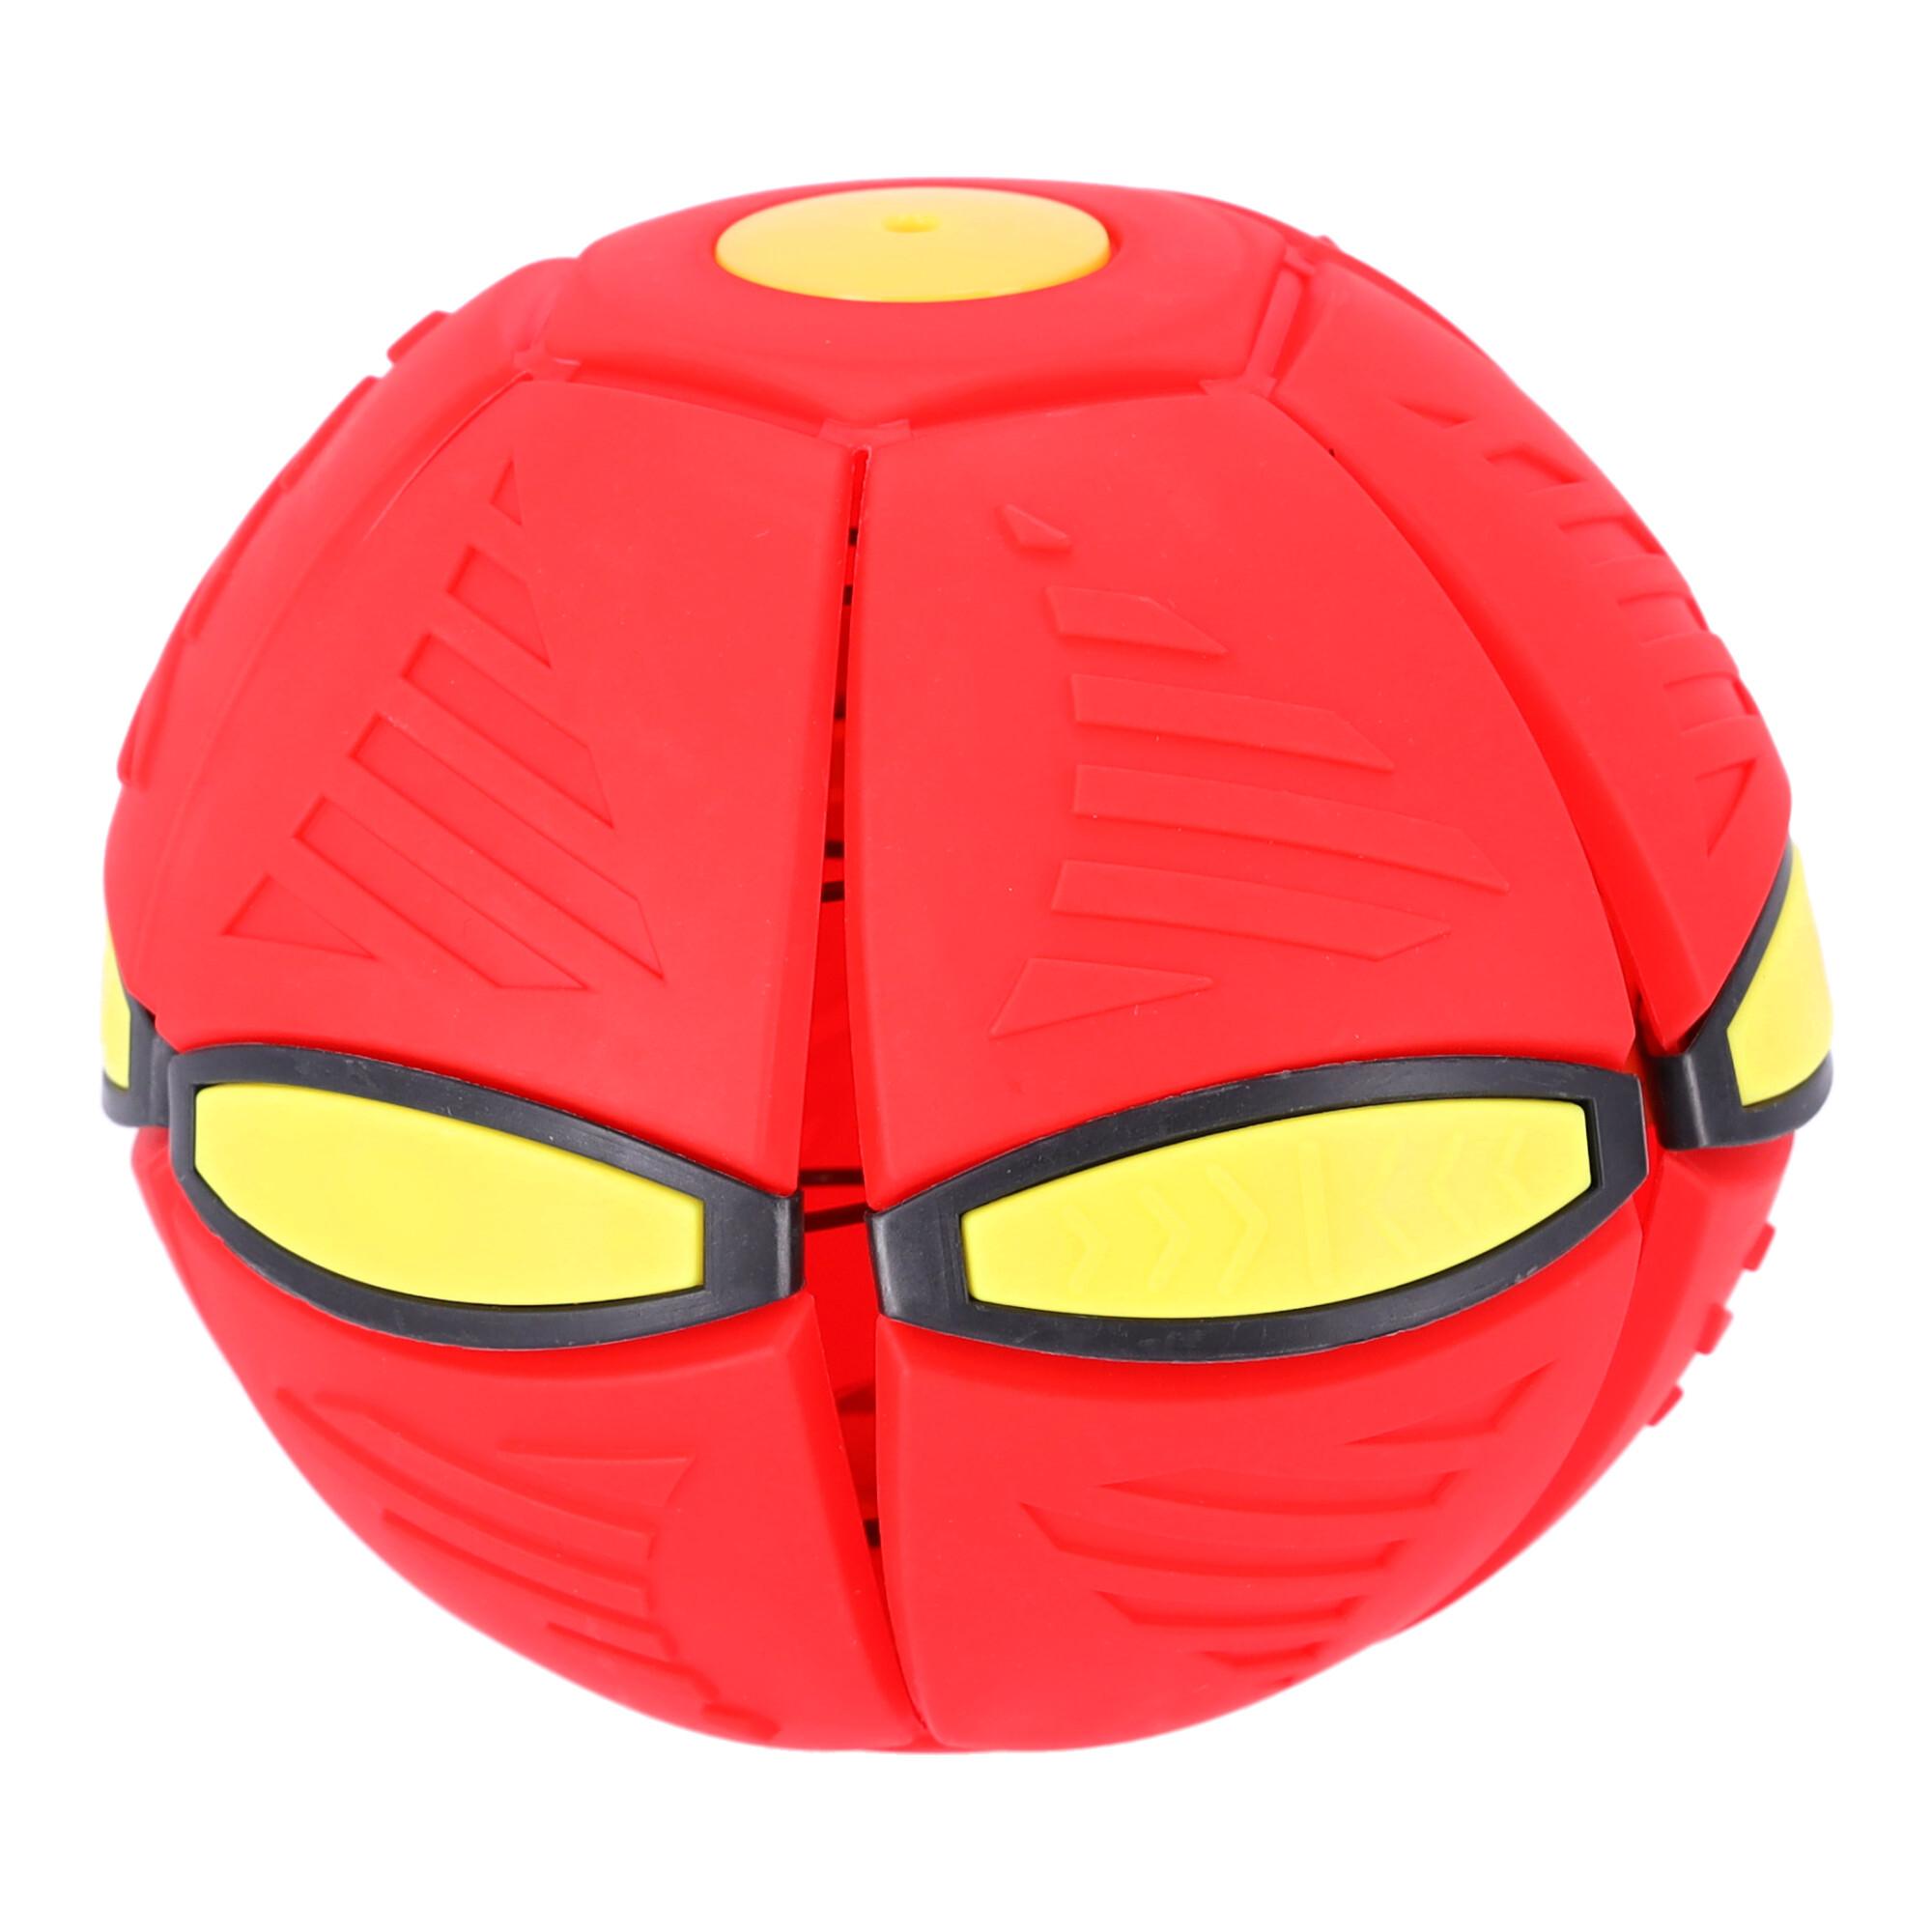 Latająca piłka 2w1, dyskopiłka - czerwona